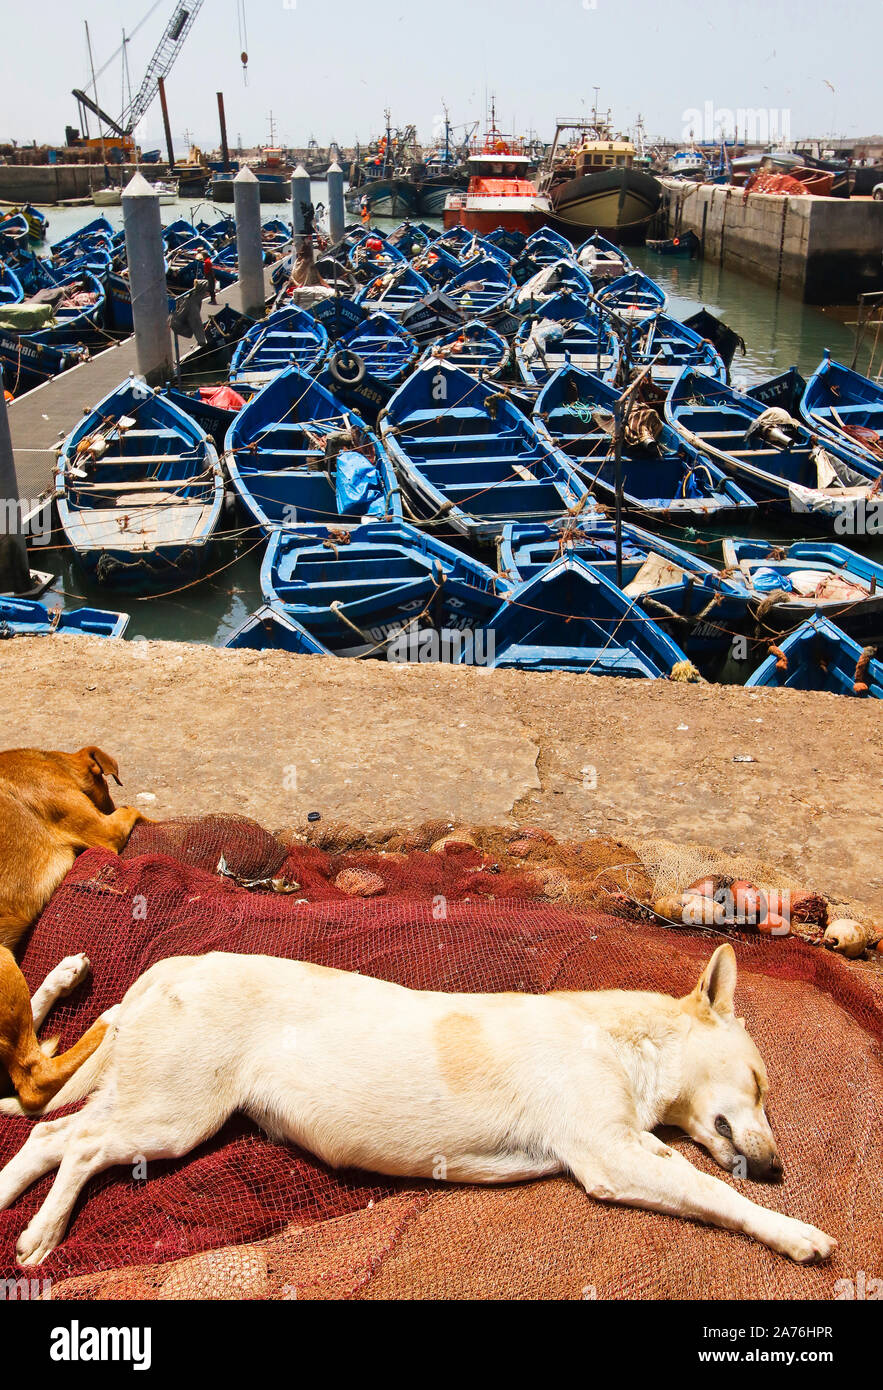 Bateaux de pêche bleu dans le port d'Essaouira, Maroc Banque D'Images